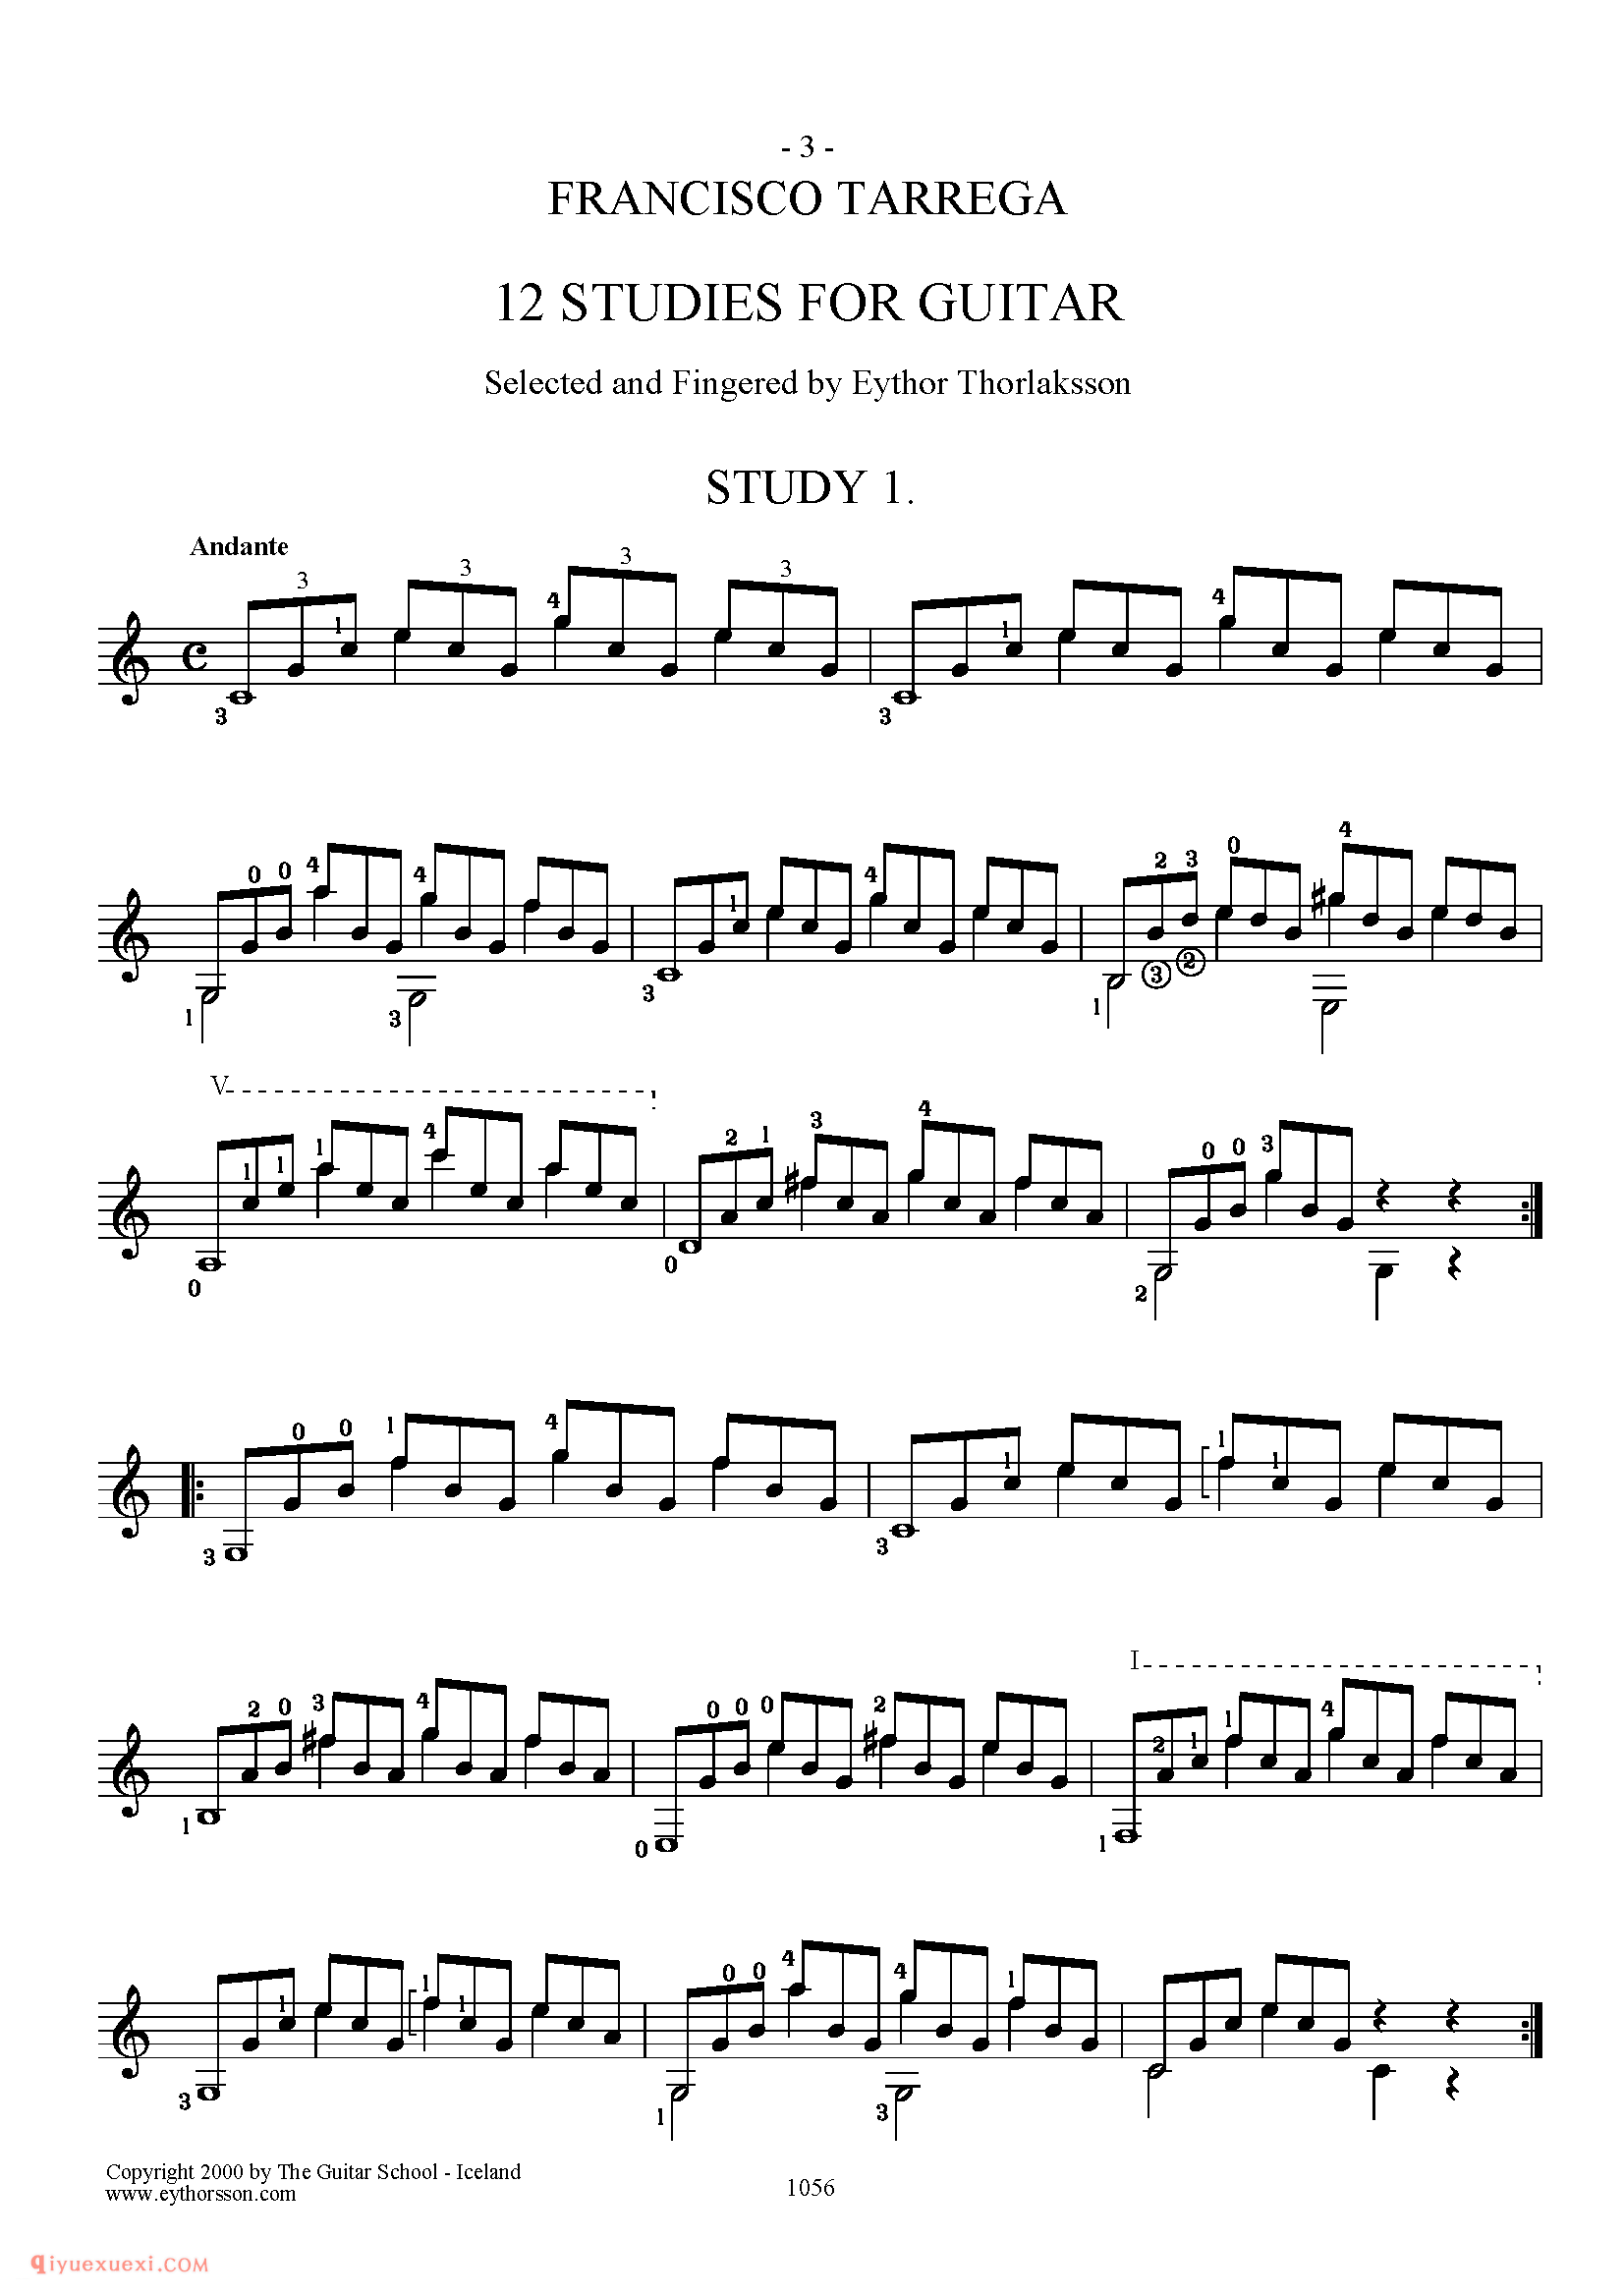 FRANCISCO TARREGA 12 STUDIES FOR GUITAR_世界著名古典吉他练习乐曲谱